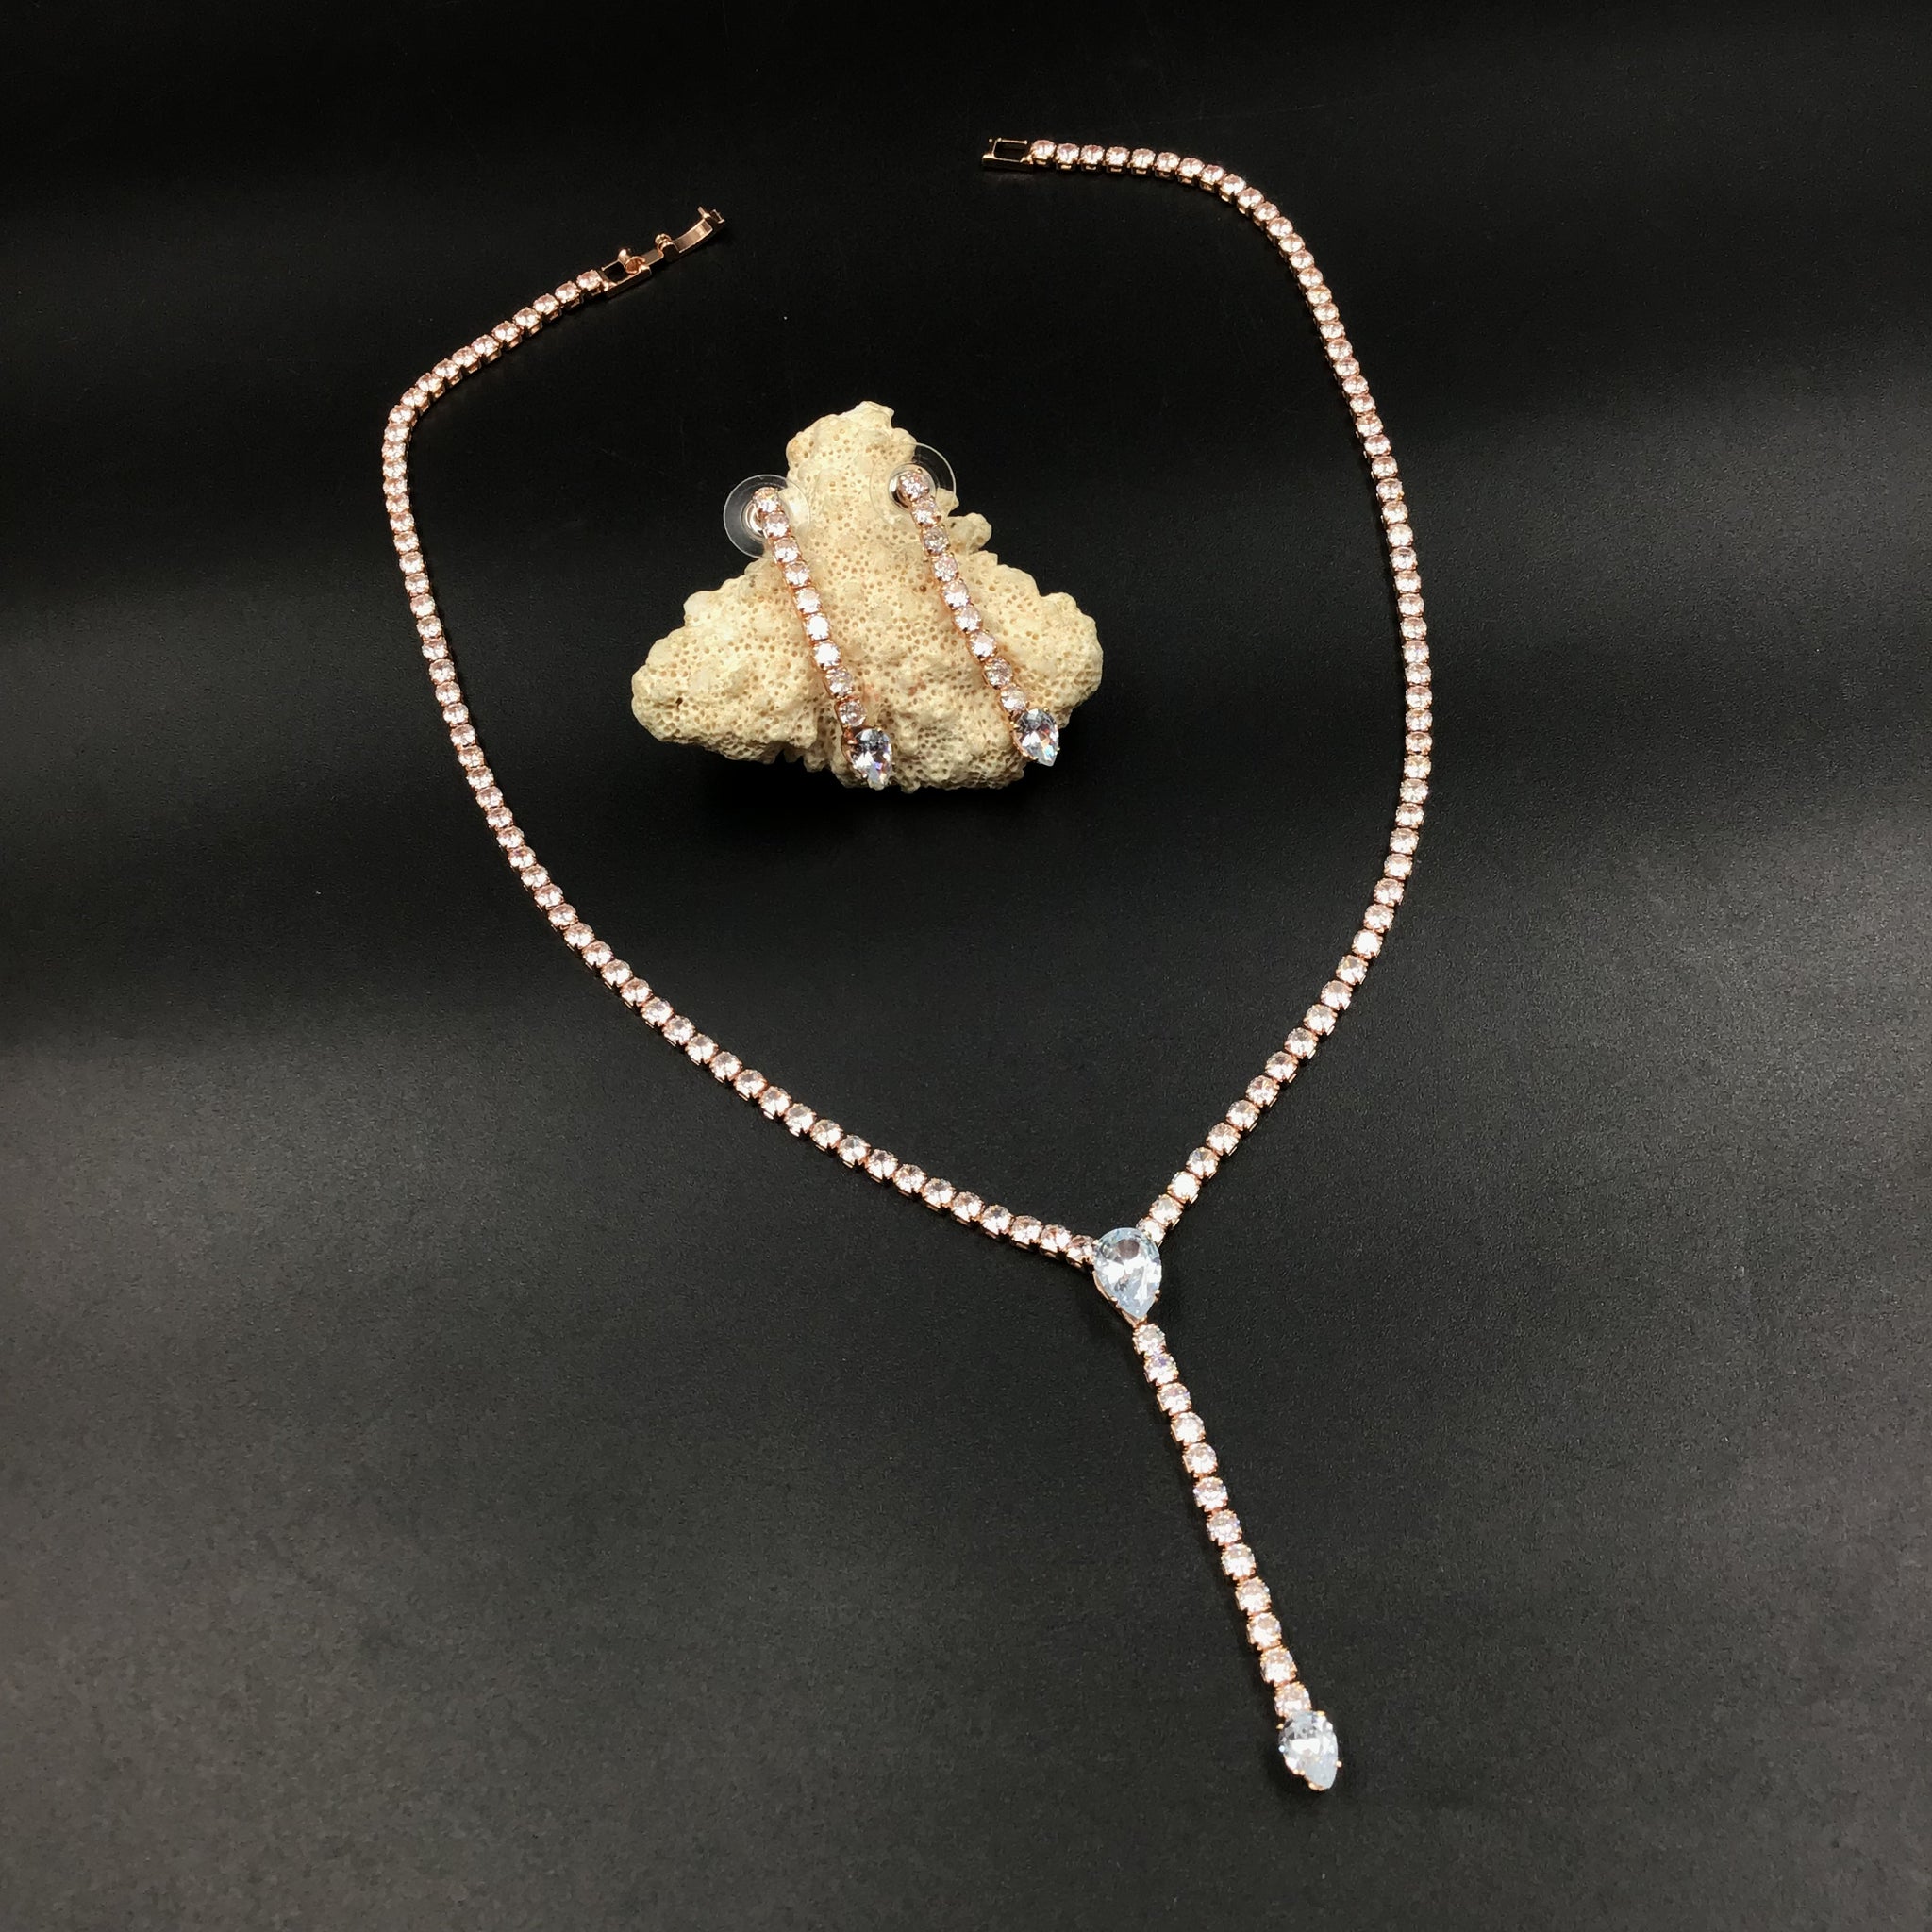 Round Neck Zircon/AD Necklace Set 7170-33 - Dazzles Jewellery